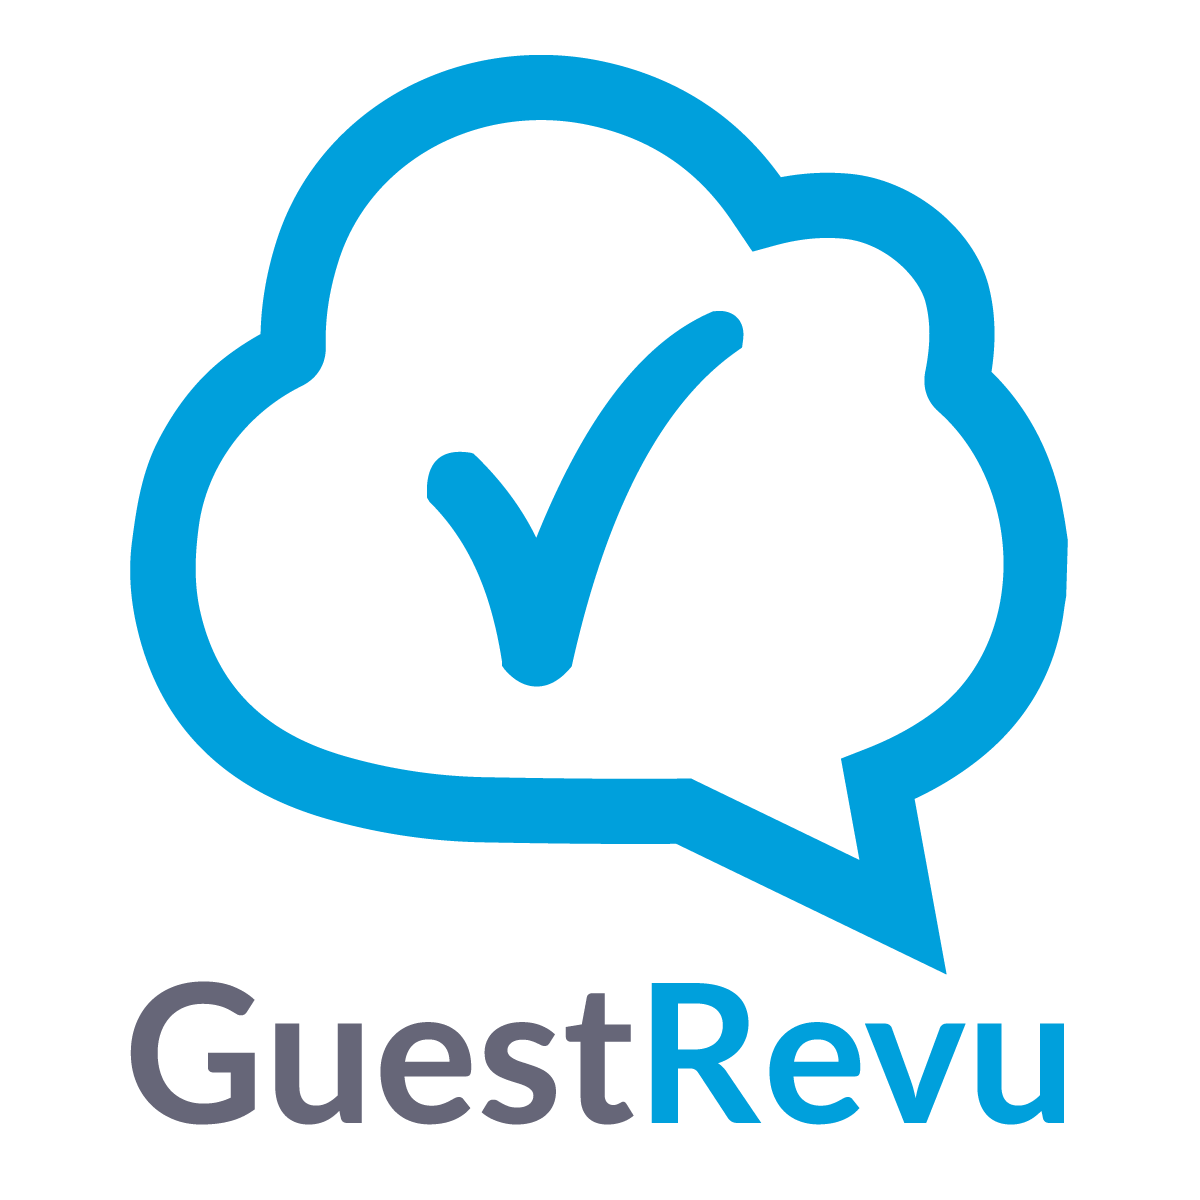 guestrevu-logo-square